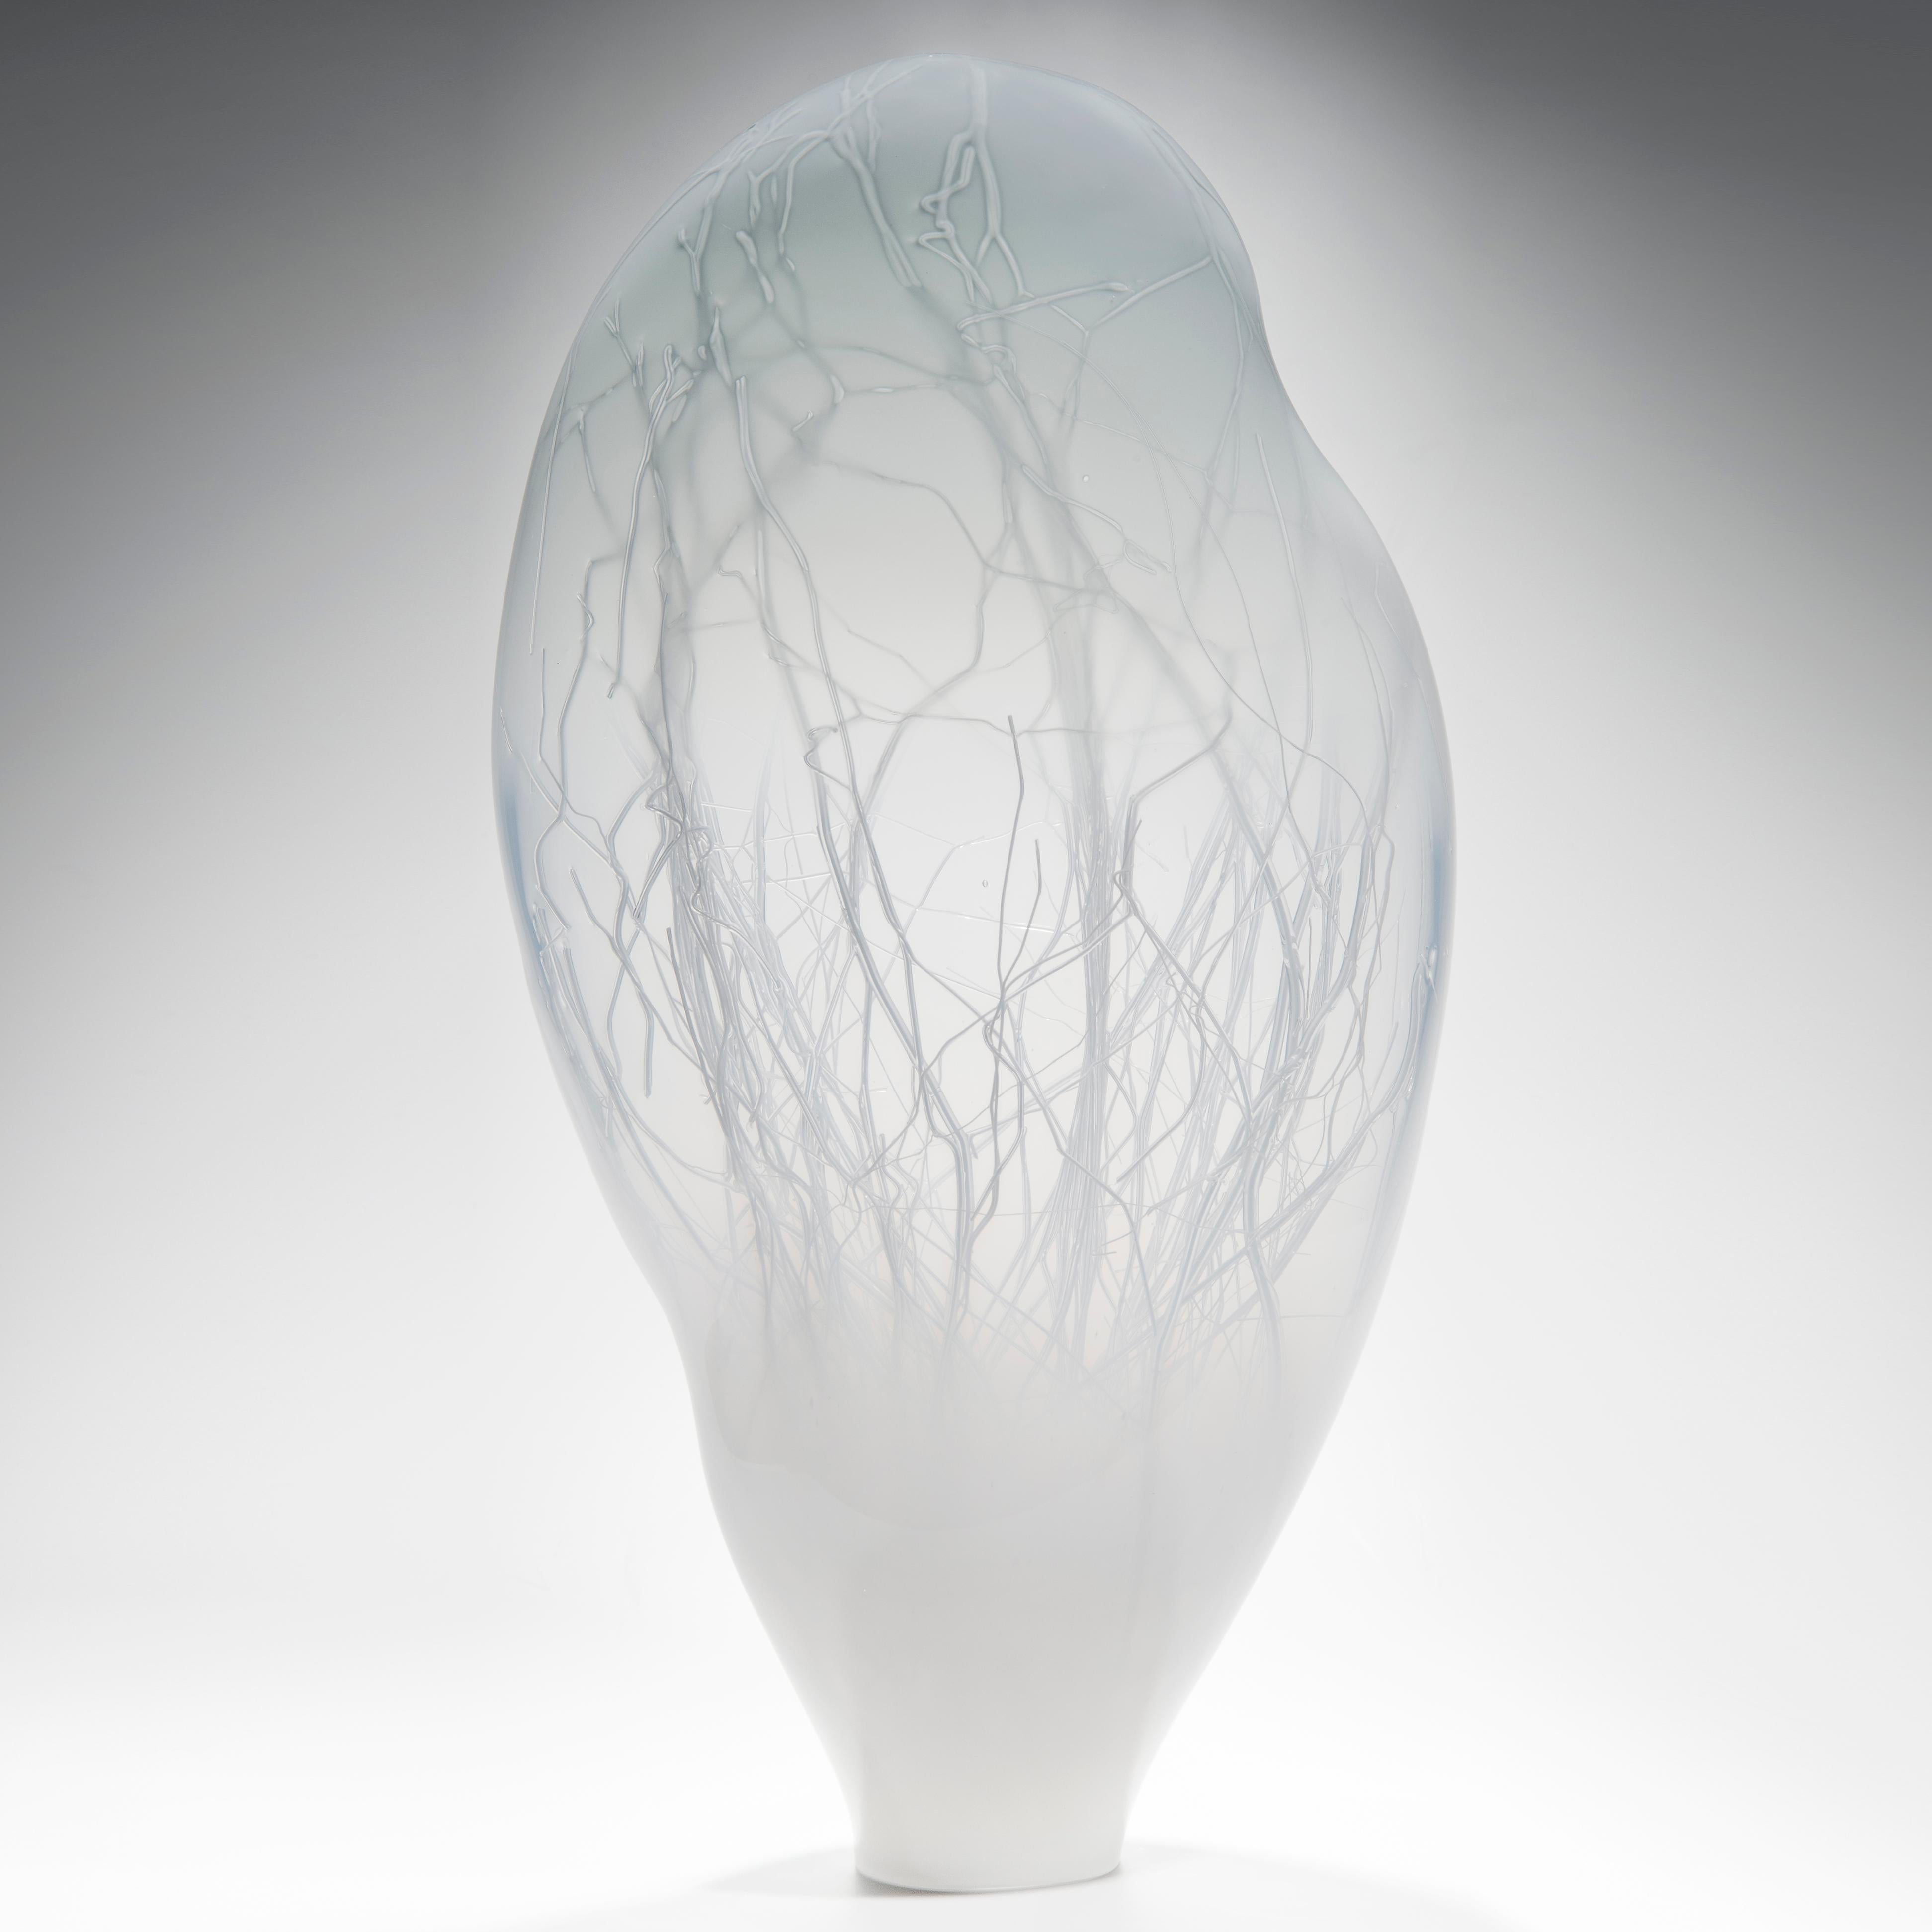 Penumbra in Grey ist eine einzigartige Glasskulptur aus weißem und sanft taubengrauem Glas, die von den Künstlern Hanne Enemark (Dänin) und Louis Thompson (Brite) gemeinsam geschaffen wurde. Die äußere Glasform enthält eine Vielzahl feiner weißer